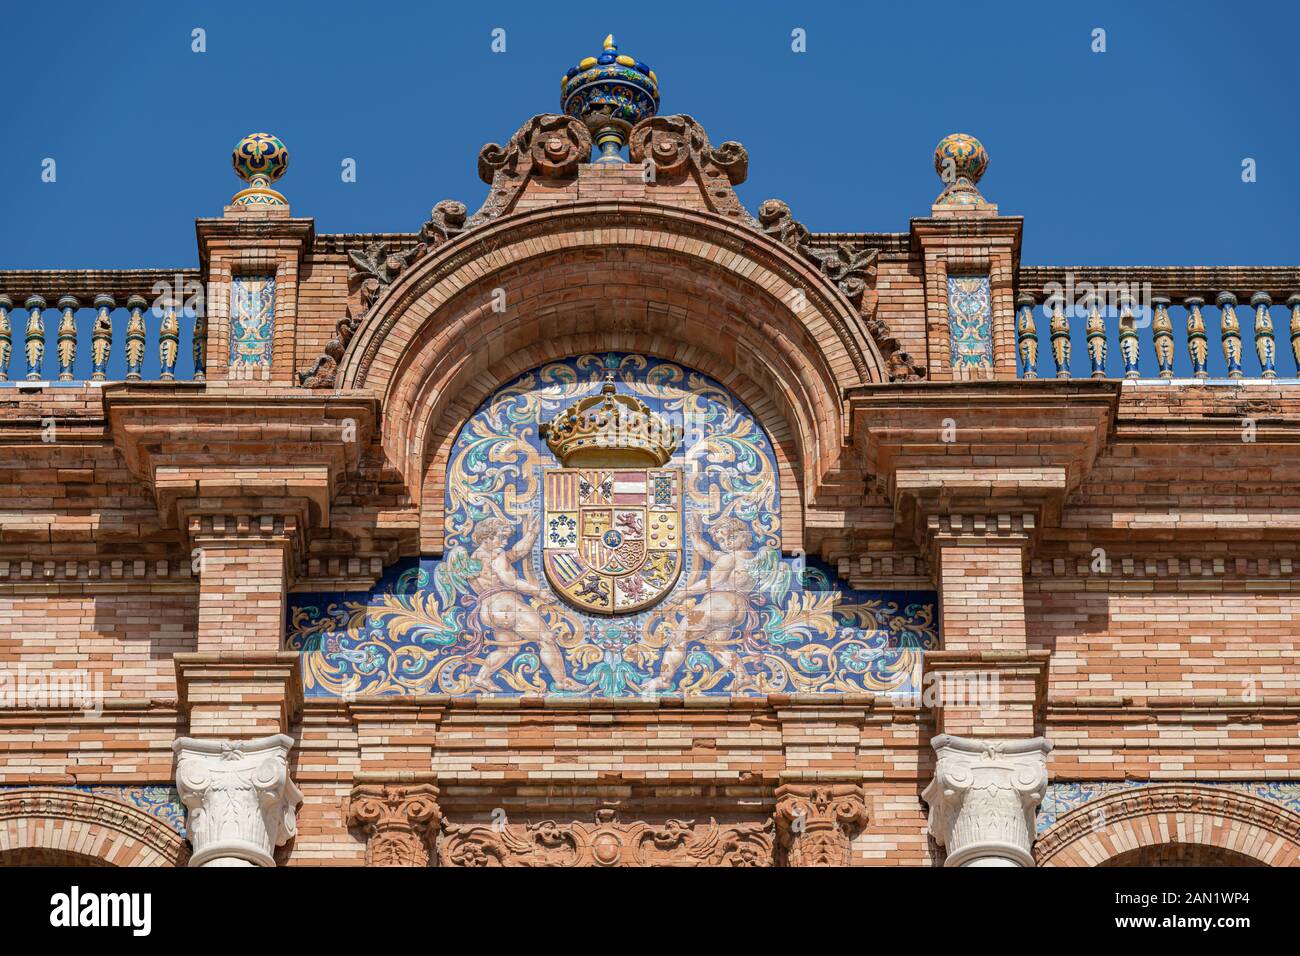 Der zentrale Bogen des Gebäudes "Plaza de España" von Aníbal González aus dem Jahr 1929 mit seinem azulejos (gekachelten) Wappen und seiner Dekoration, der Balustrade und der farbenfrohen Urne. Stockfoto